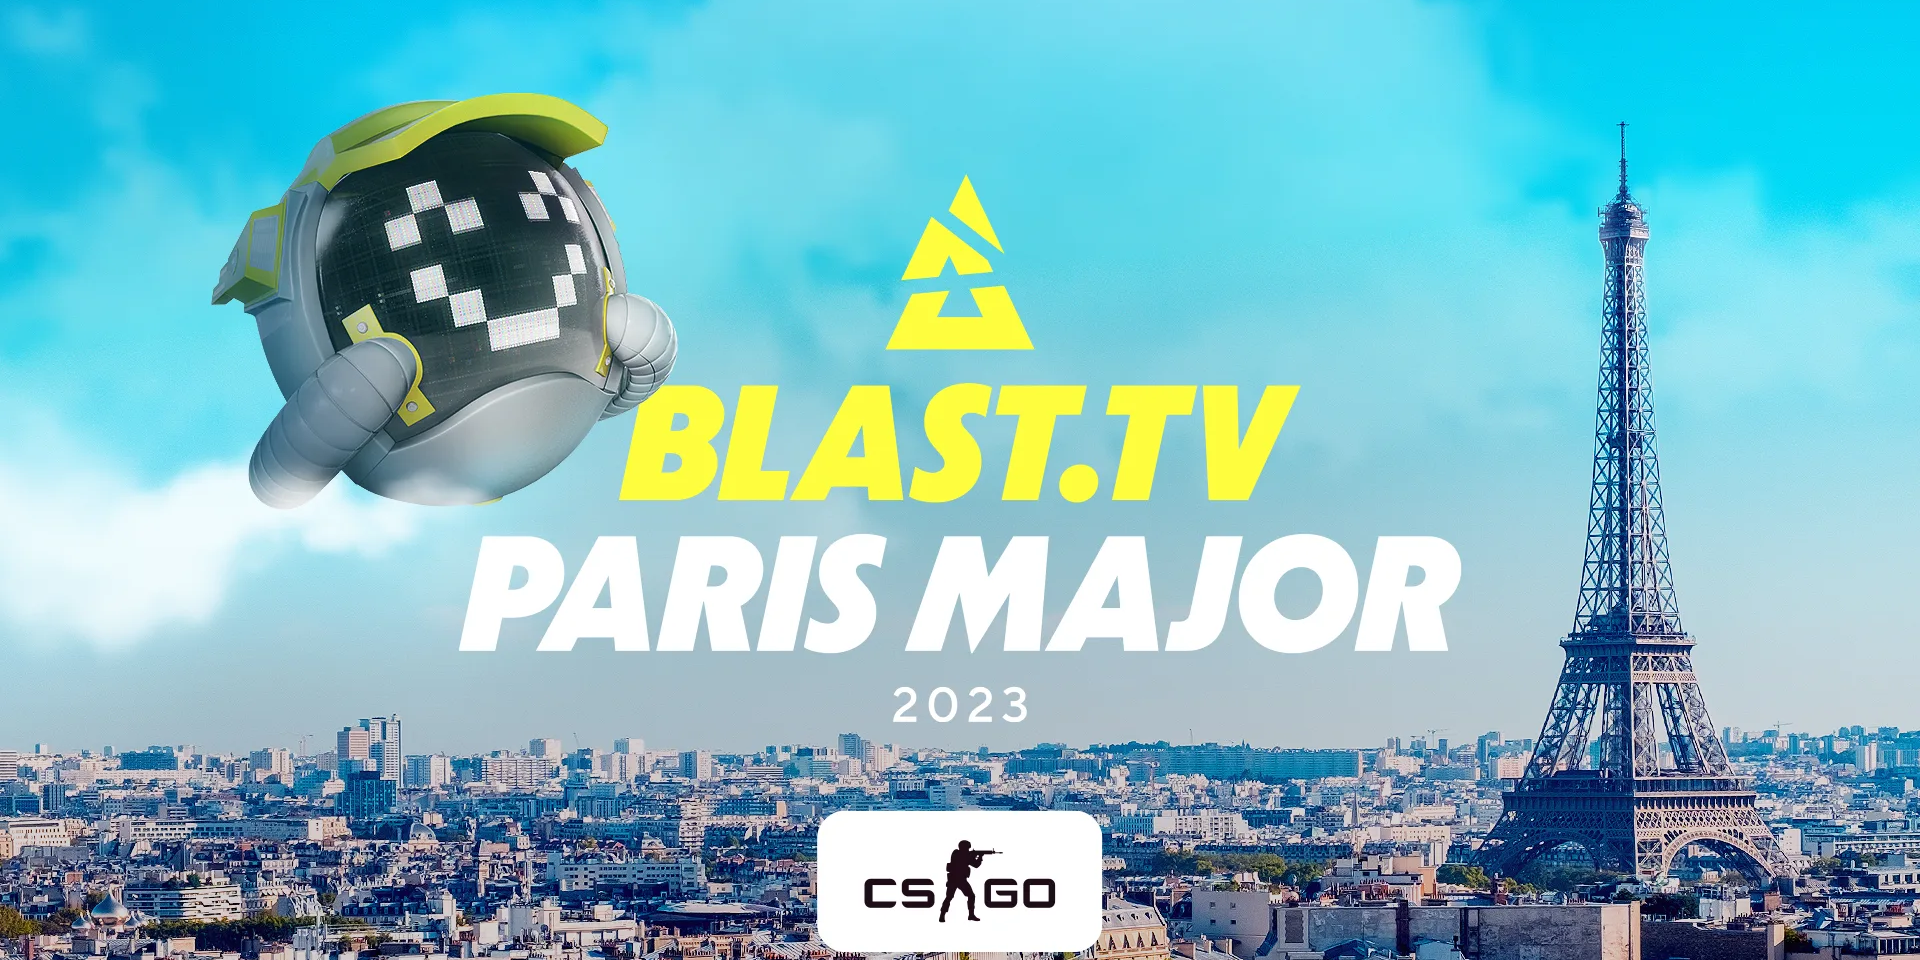 Сувенирные наборы major paris 2023. Бласт Париж 2023. Blast Paris Major. Blast TV Major 2023. Мажор Париж 2023.